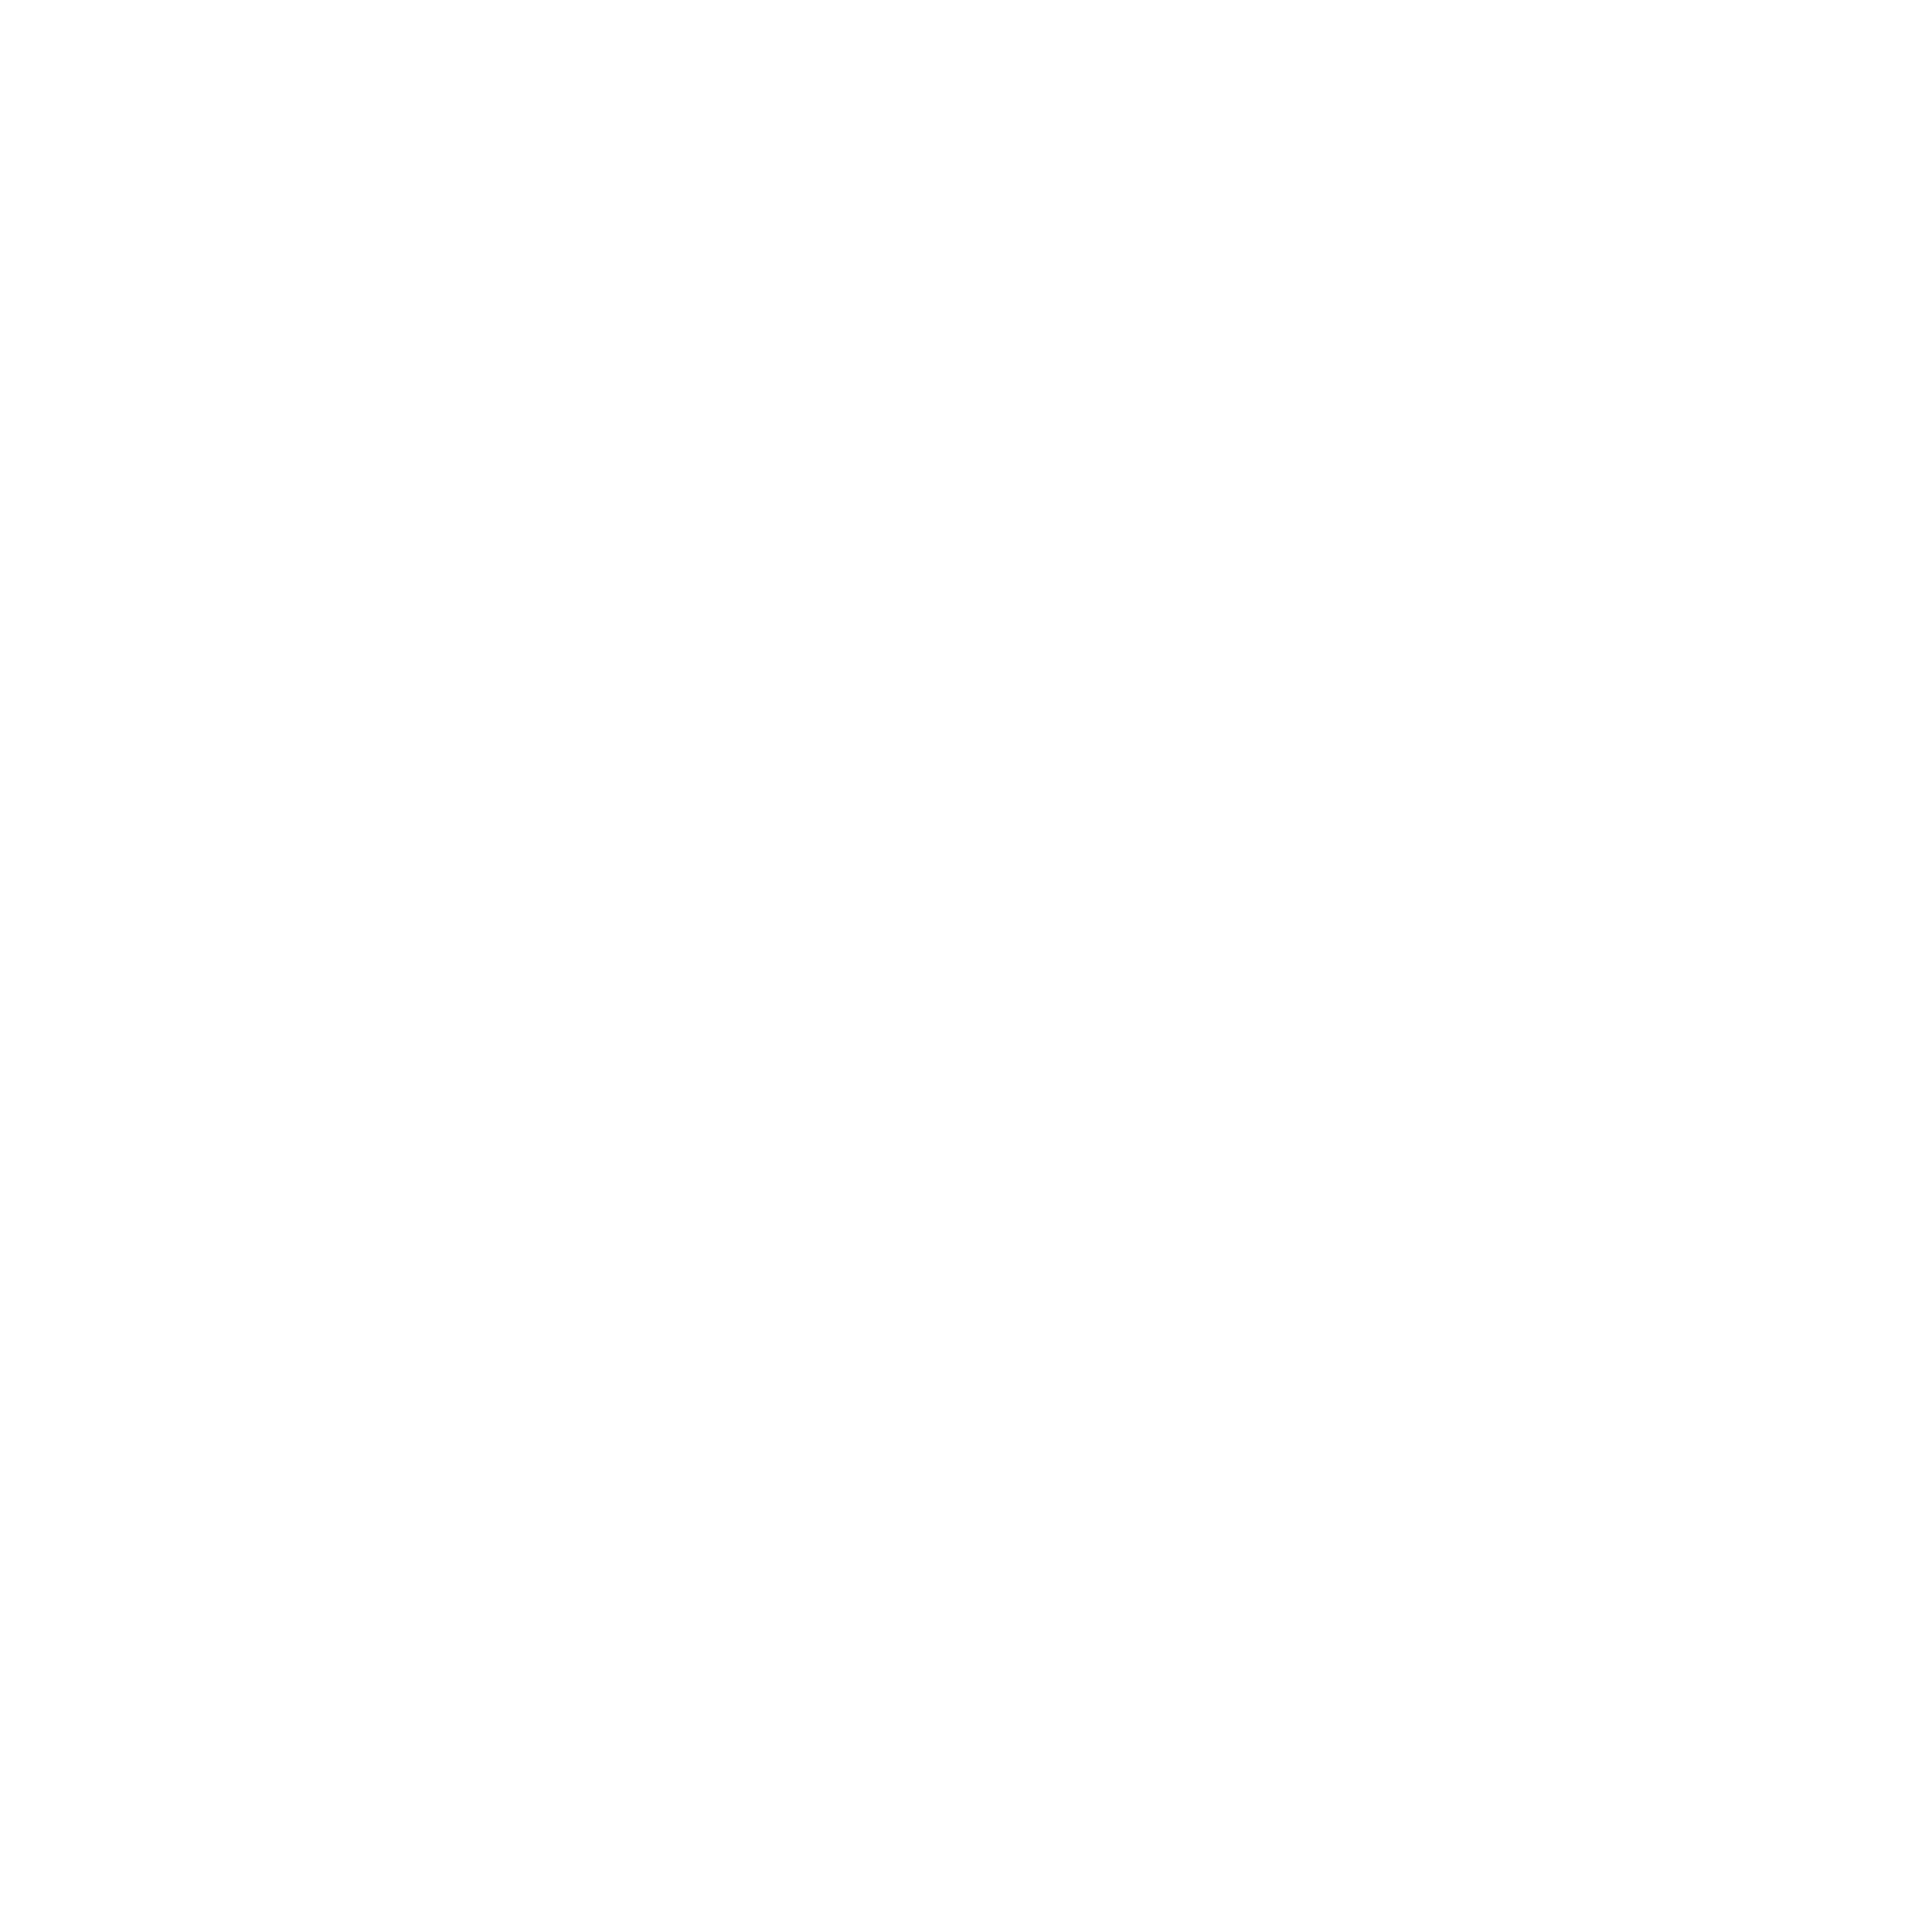 IGNITEのロゴ